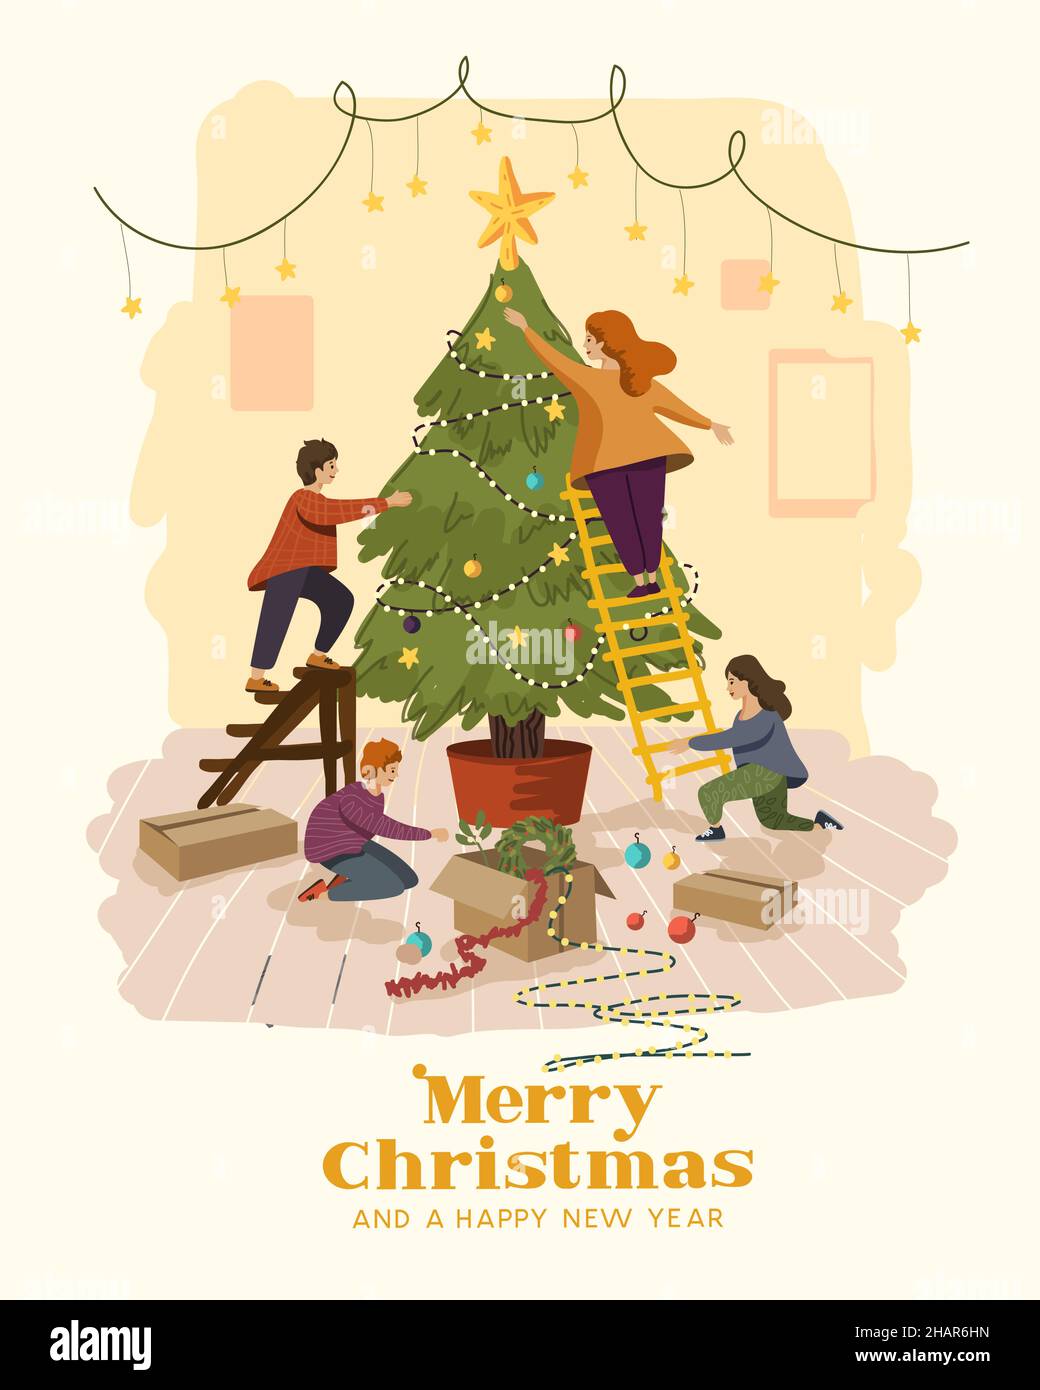 Eine glückliche Familie zu Hause genießt die Dekoration des weihnachtsbaums. Vektor-Illustration für festliche Menschen. Stock Vektor